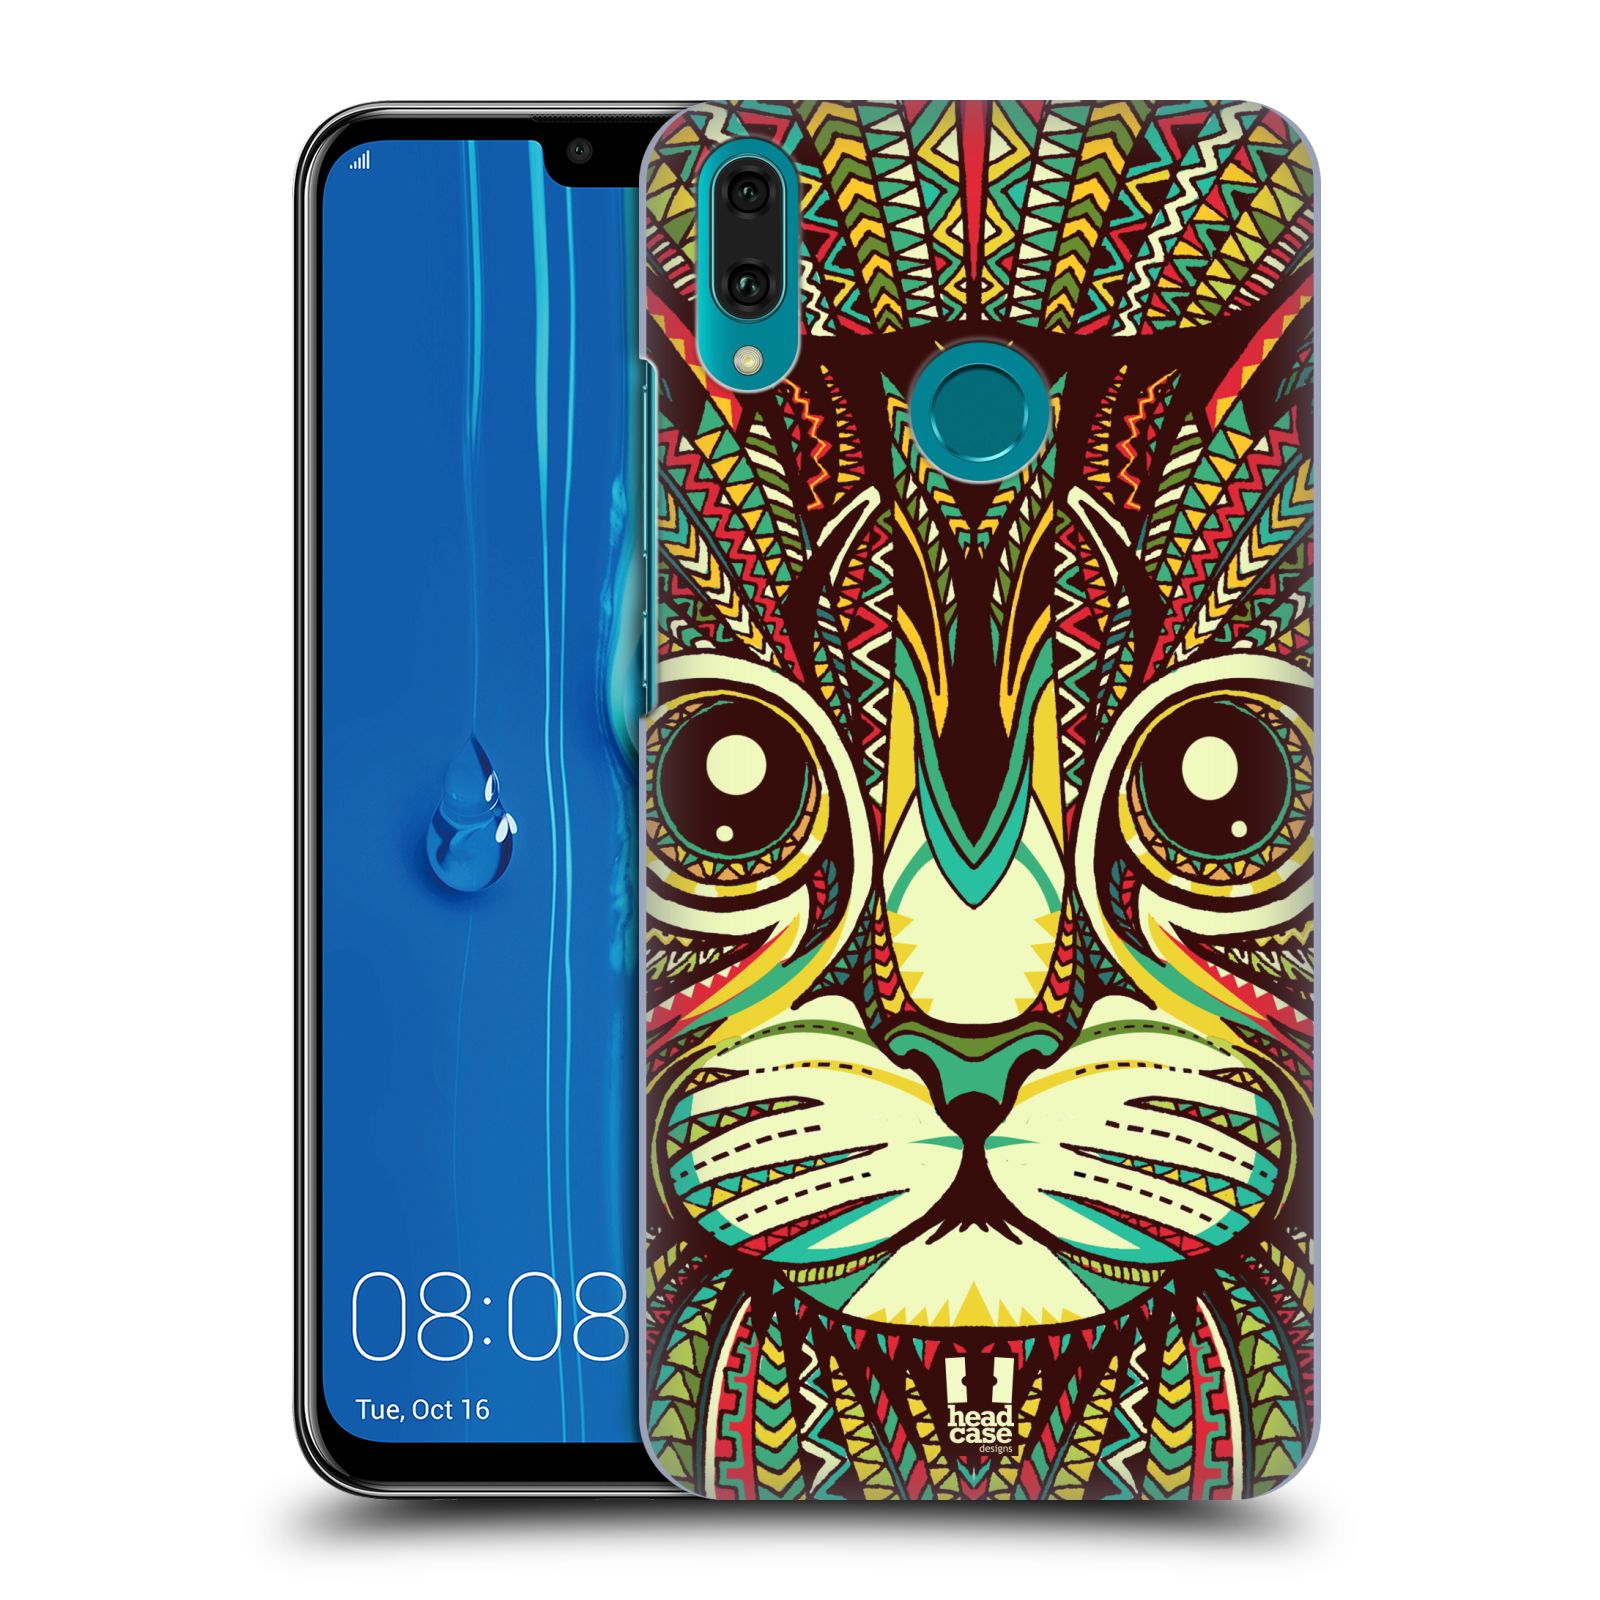 Pouzdro na mobil Huawei Y9 2019 - HEAD CASE - vzor Aztécký motiv zvíře 2 kotě